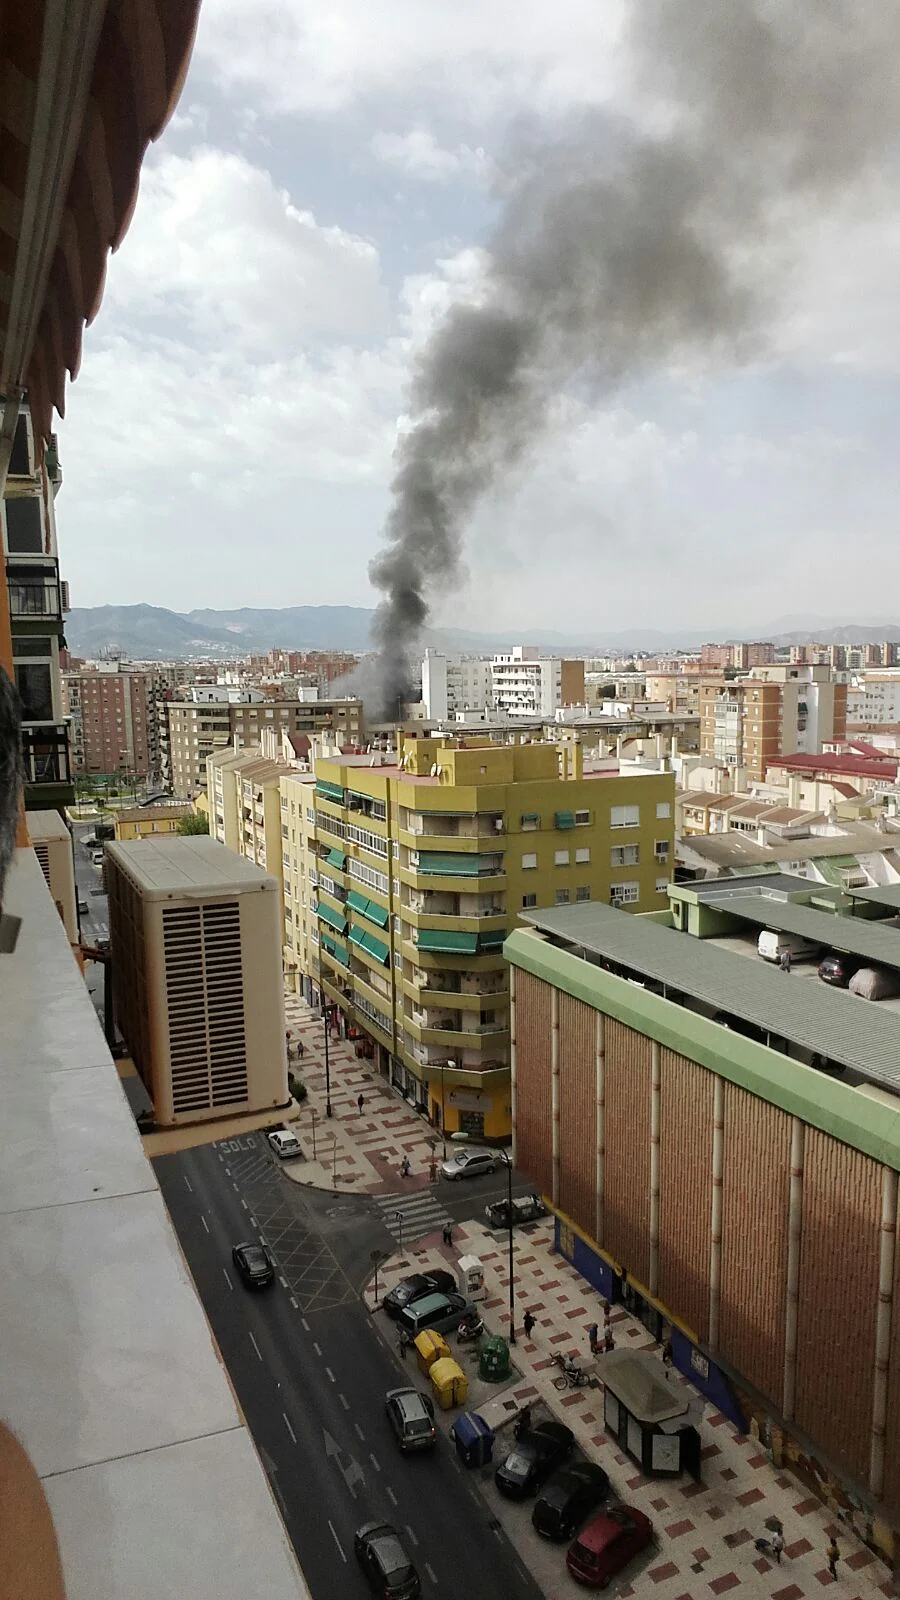 Este viernes se ha registrado un incendio en un edificio de la zona de la avenida Juan XXIII, del que salía una columna de humo visible desde distintas partes de Málaga.